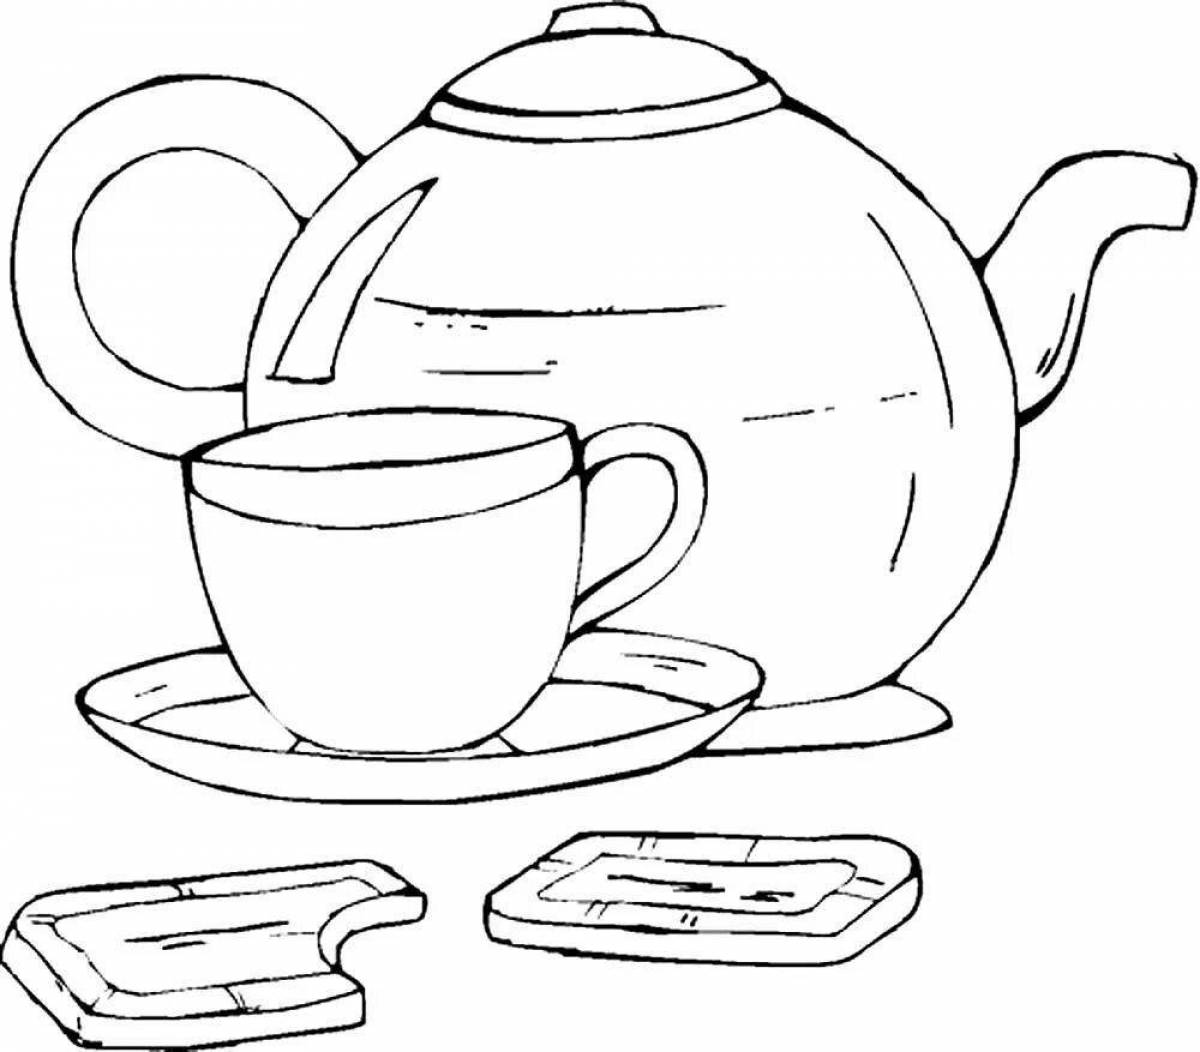 Tea and mug #3